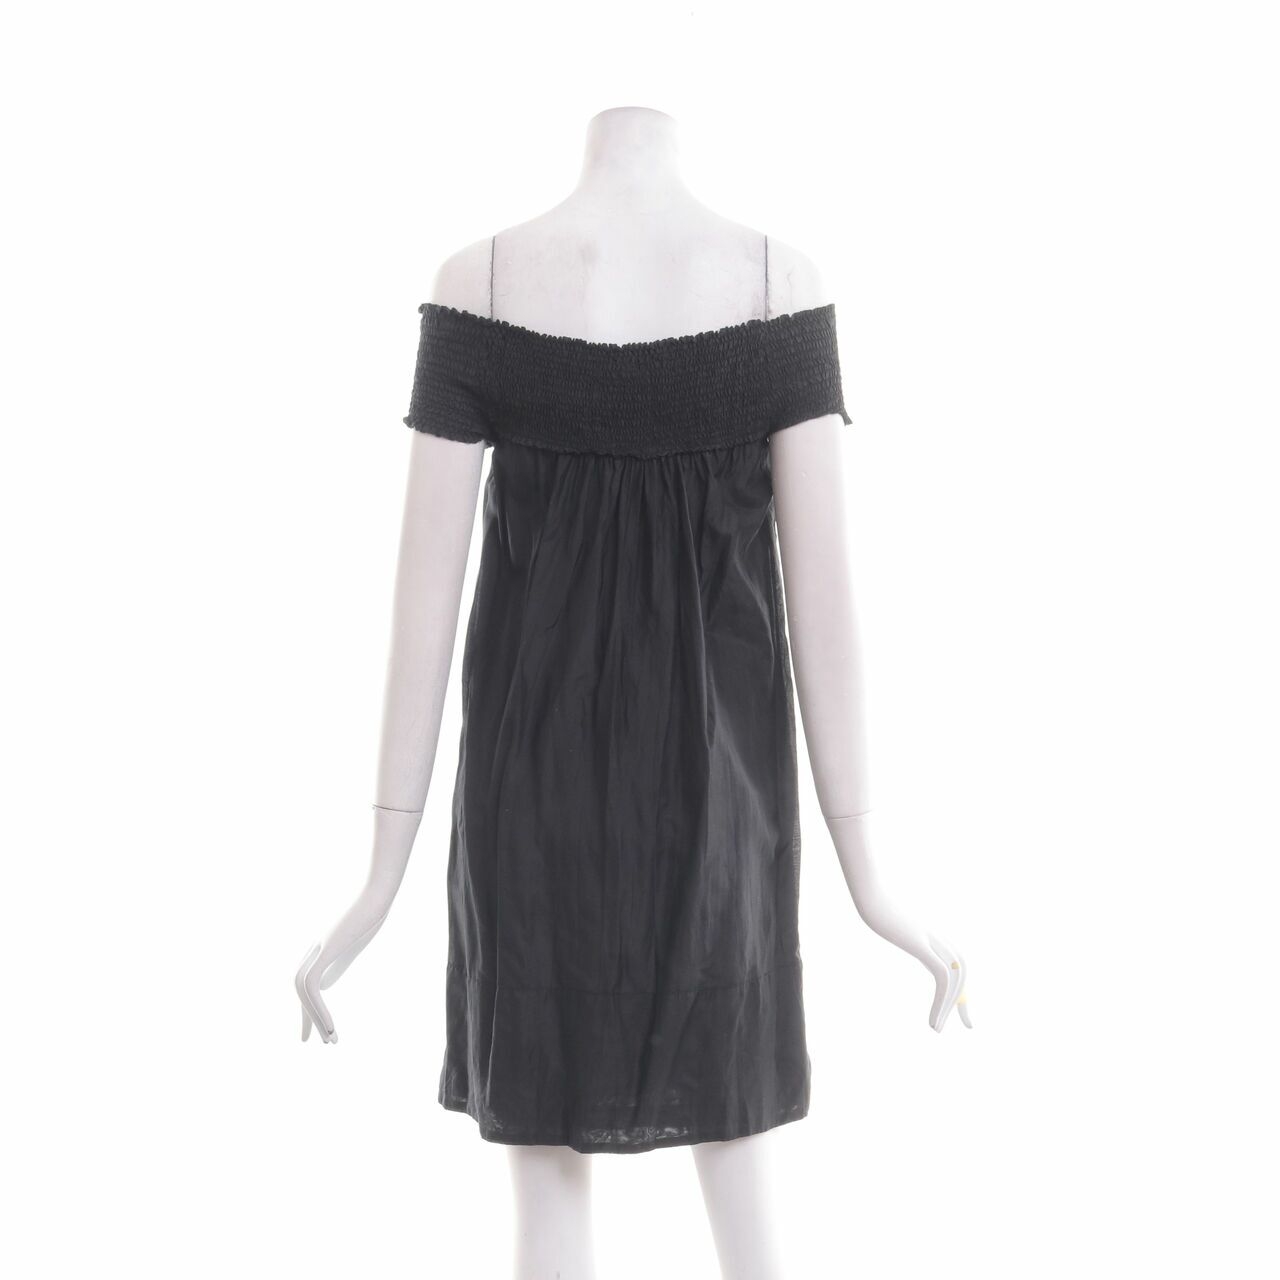 Mphosis Black Mini Dress